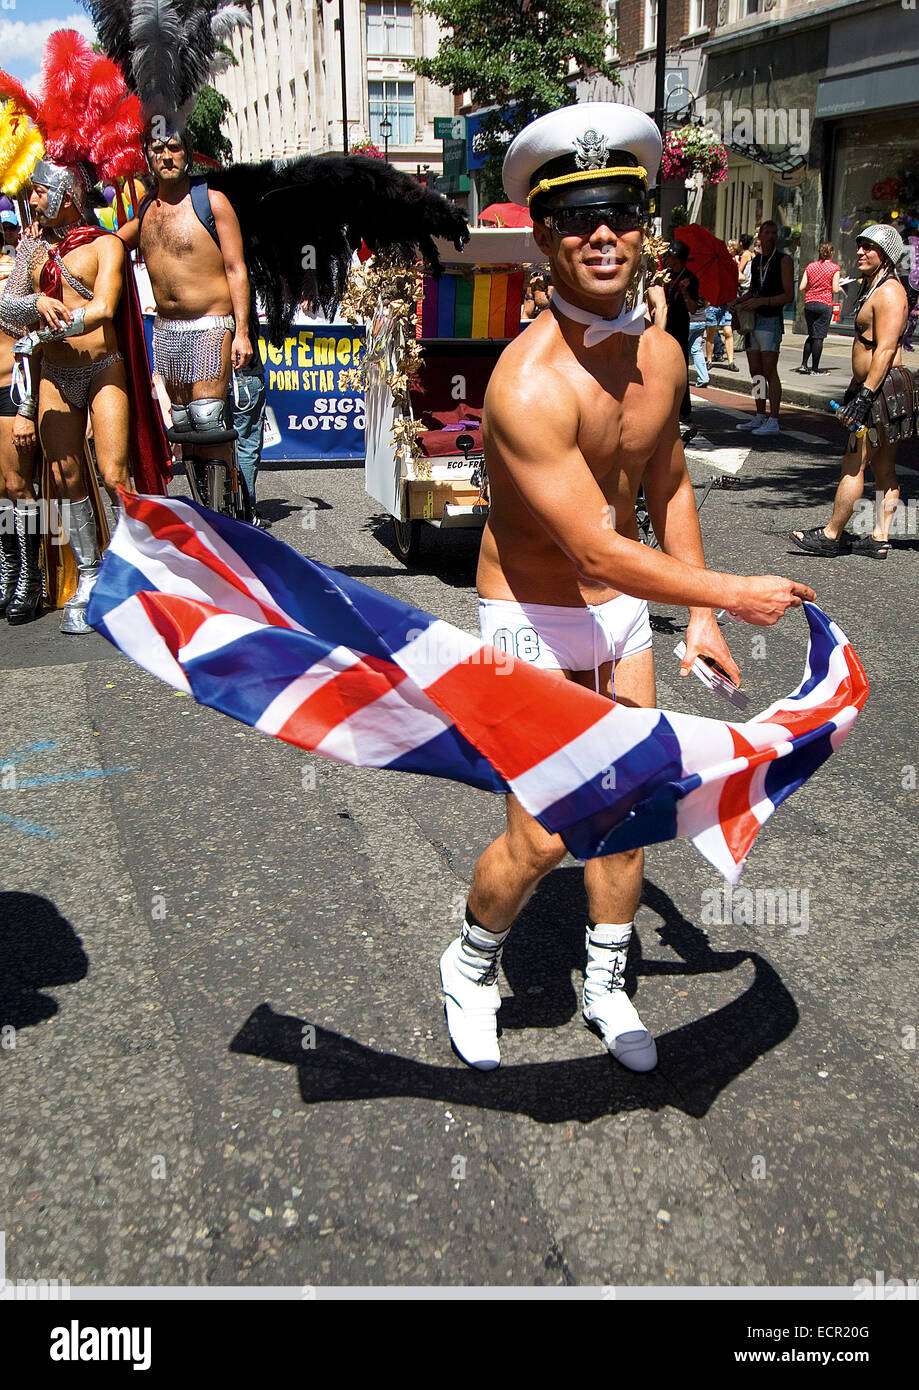 Un homme gay habillé comme un marin garçon pose pour la photographie au London Pride Parade. Banque D'Images